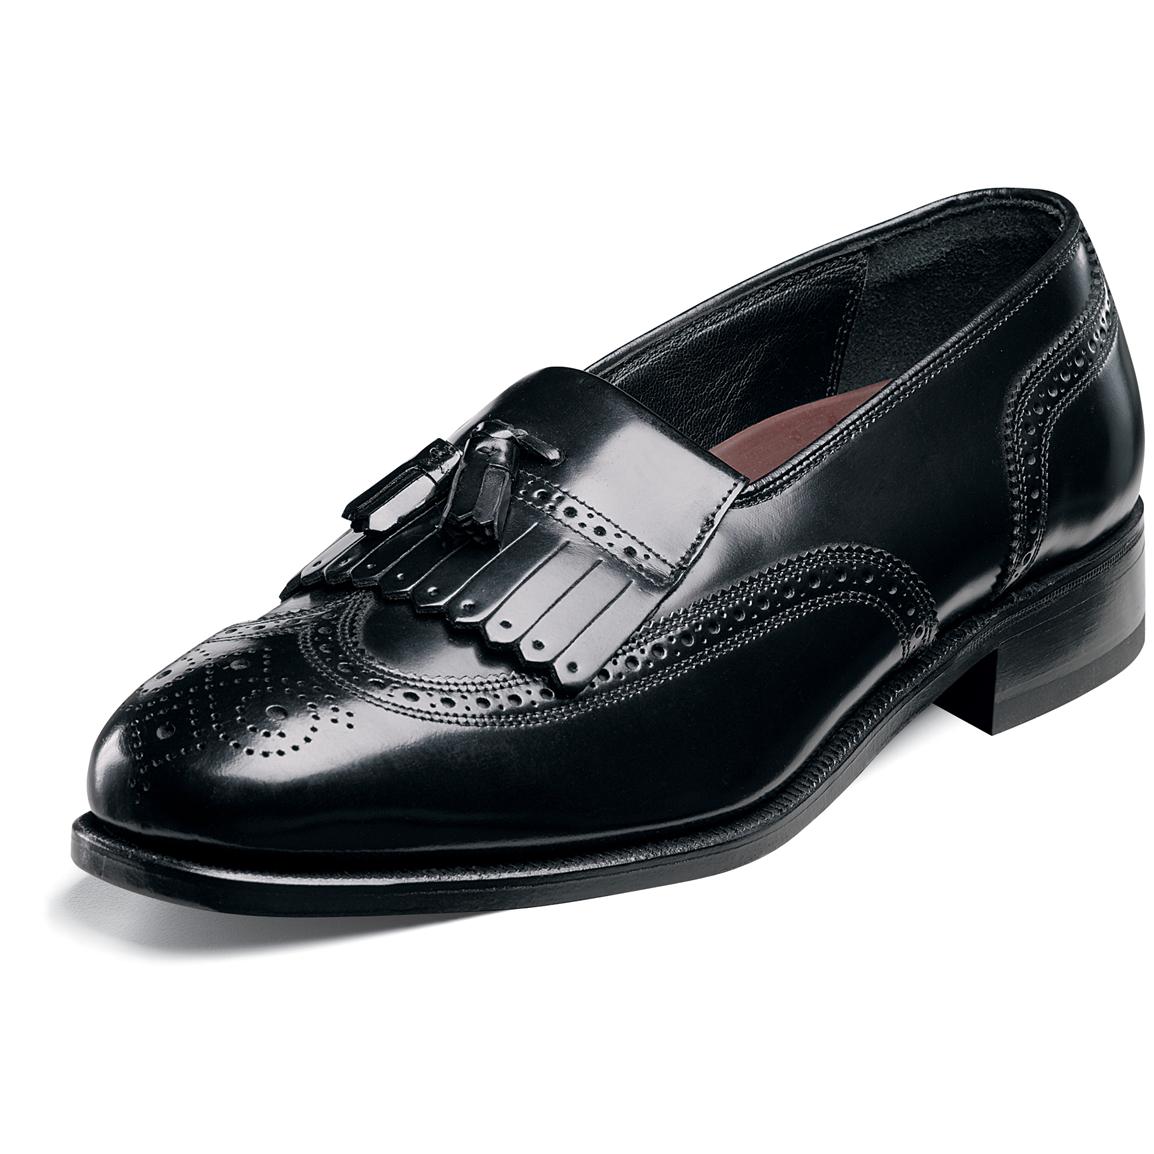 Men's Florsheim® Kiltie Tasseled Wing Tip Lexington Shoes, Black